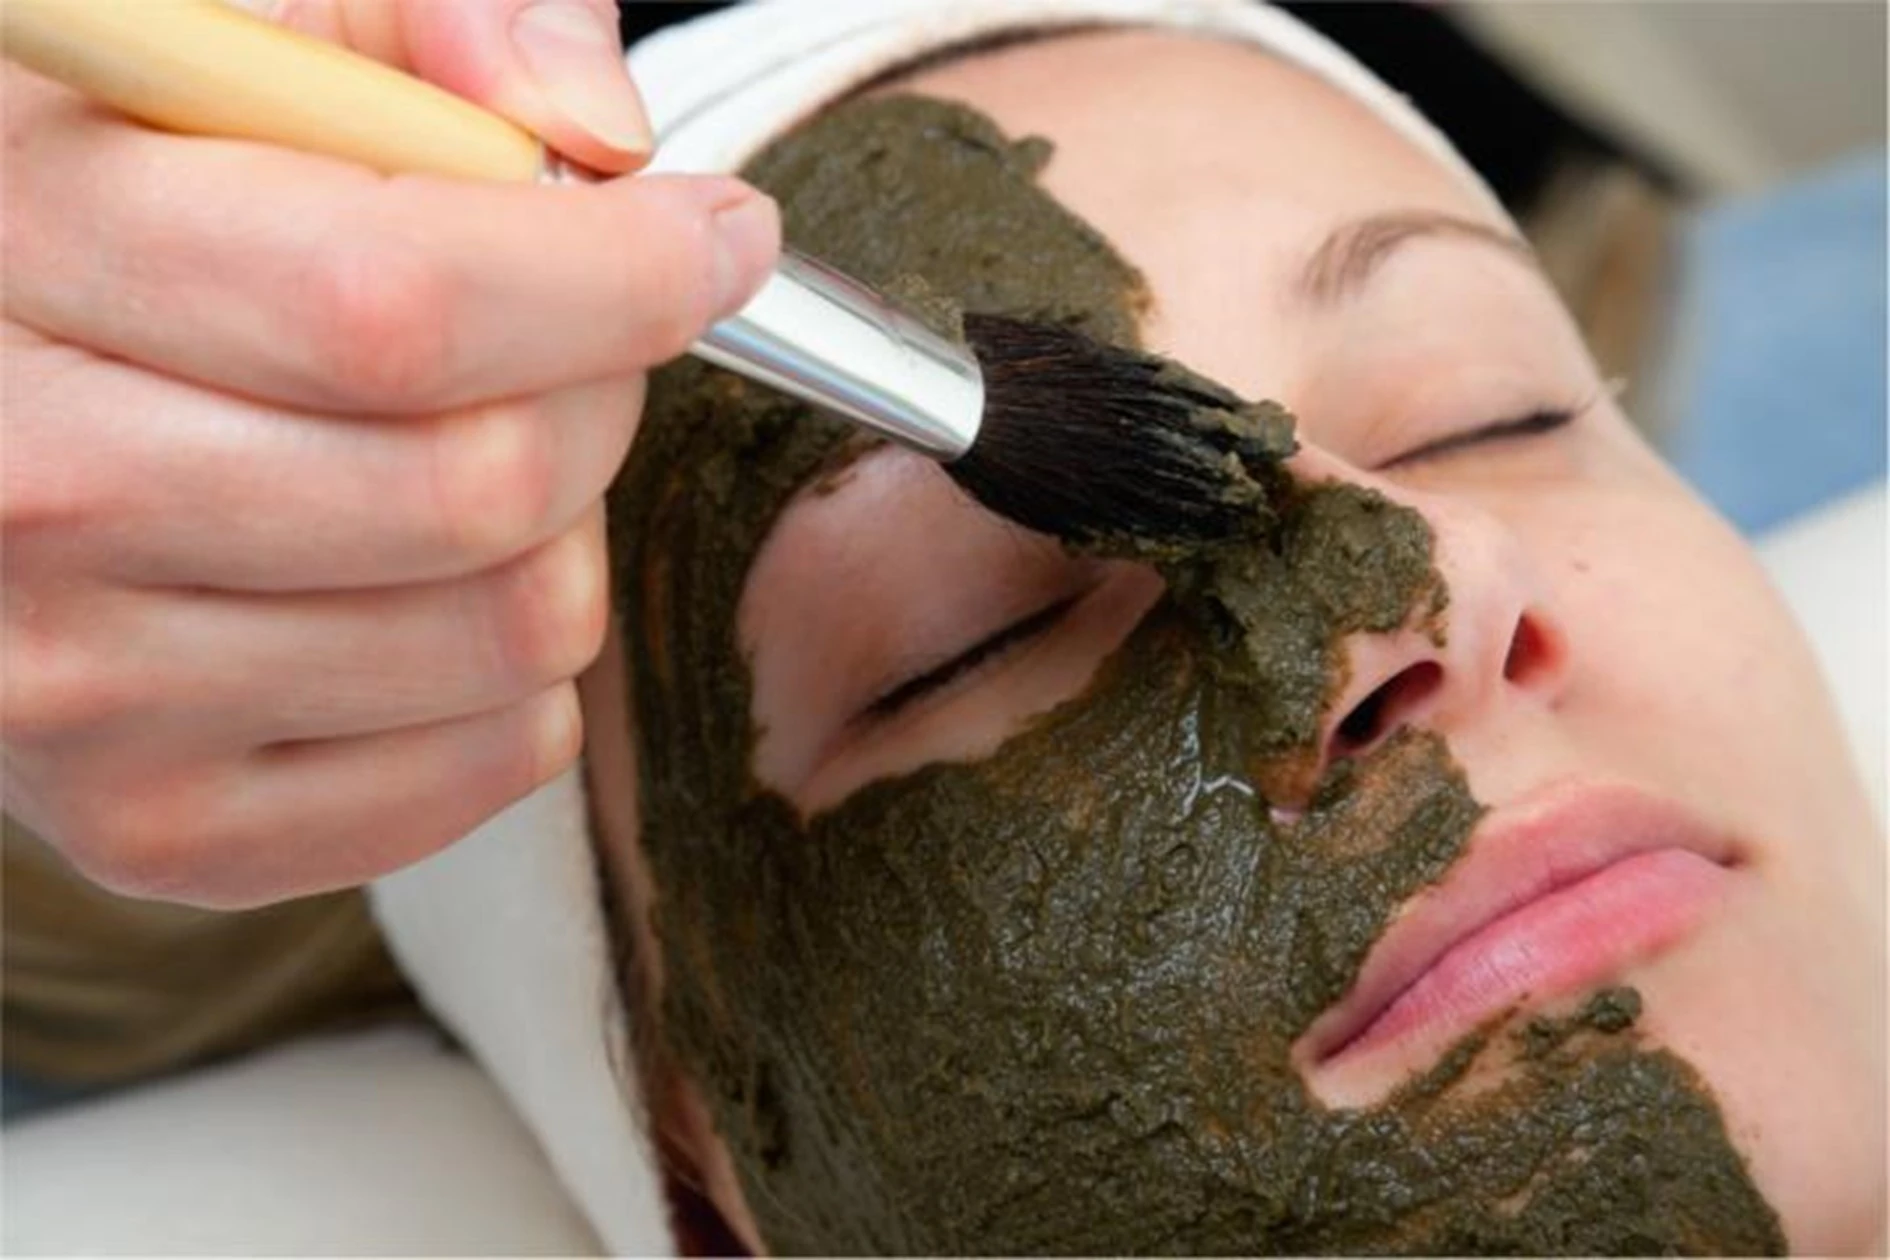 Aktivkohlepaste wird mit Pinsel auf das Gesicht einer Frau aufgetragen. Das Bild ist ein Teil des Acala Blogbeitrages:  Aktivkohle, Anwendung und Hintergründe